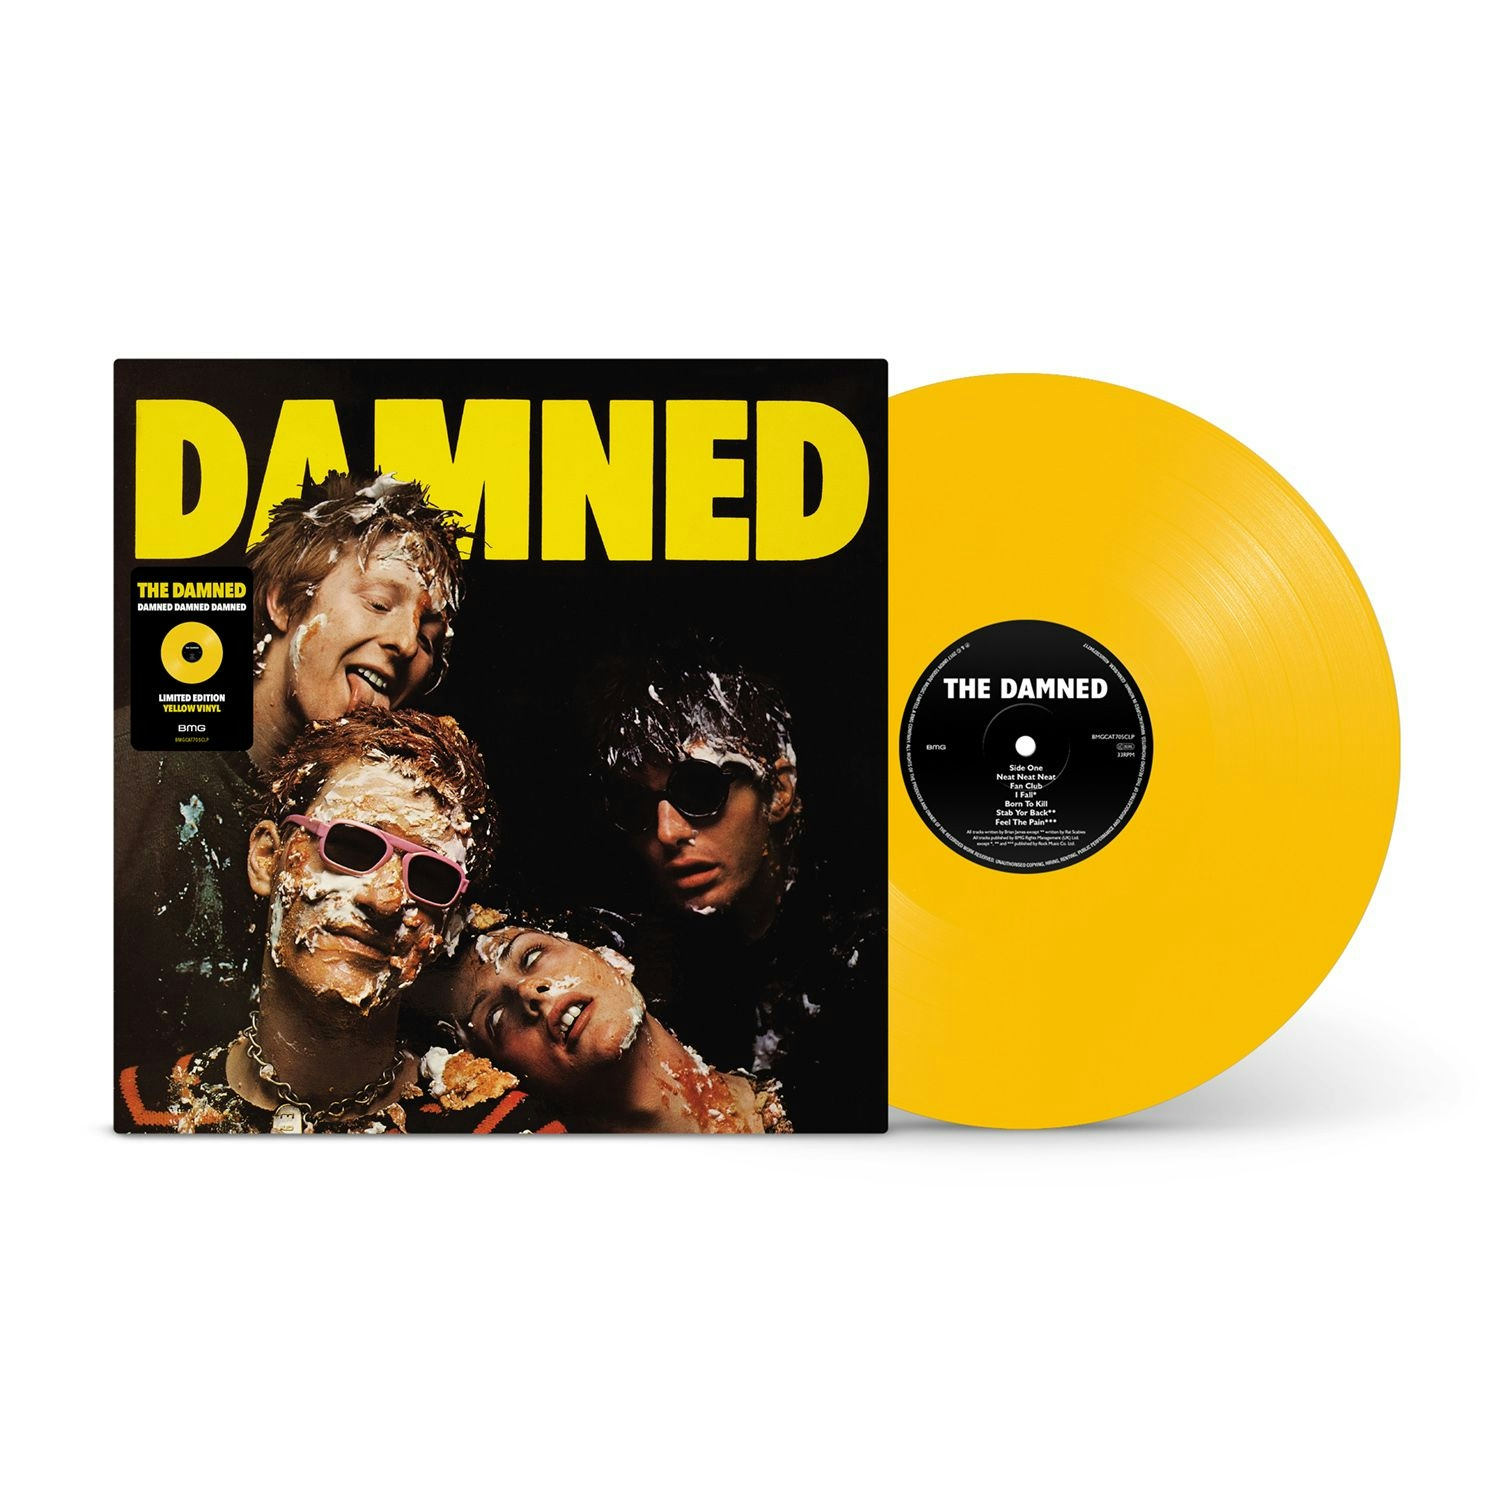 Album artwork for Album artwork for Damned Damned Damned (National Album Day 2022) by The Damned by Damned Damned Damned (National Album Day 2022) - The Damned